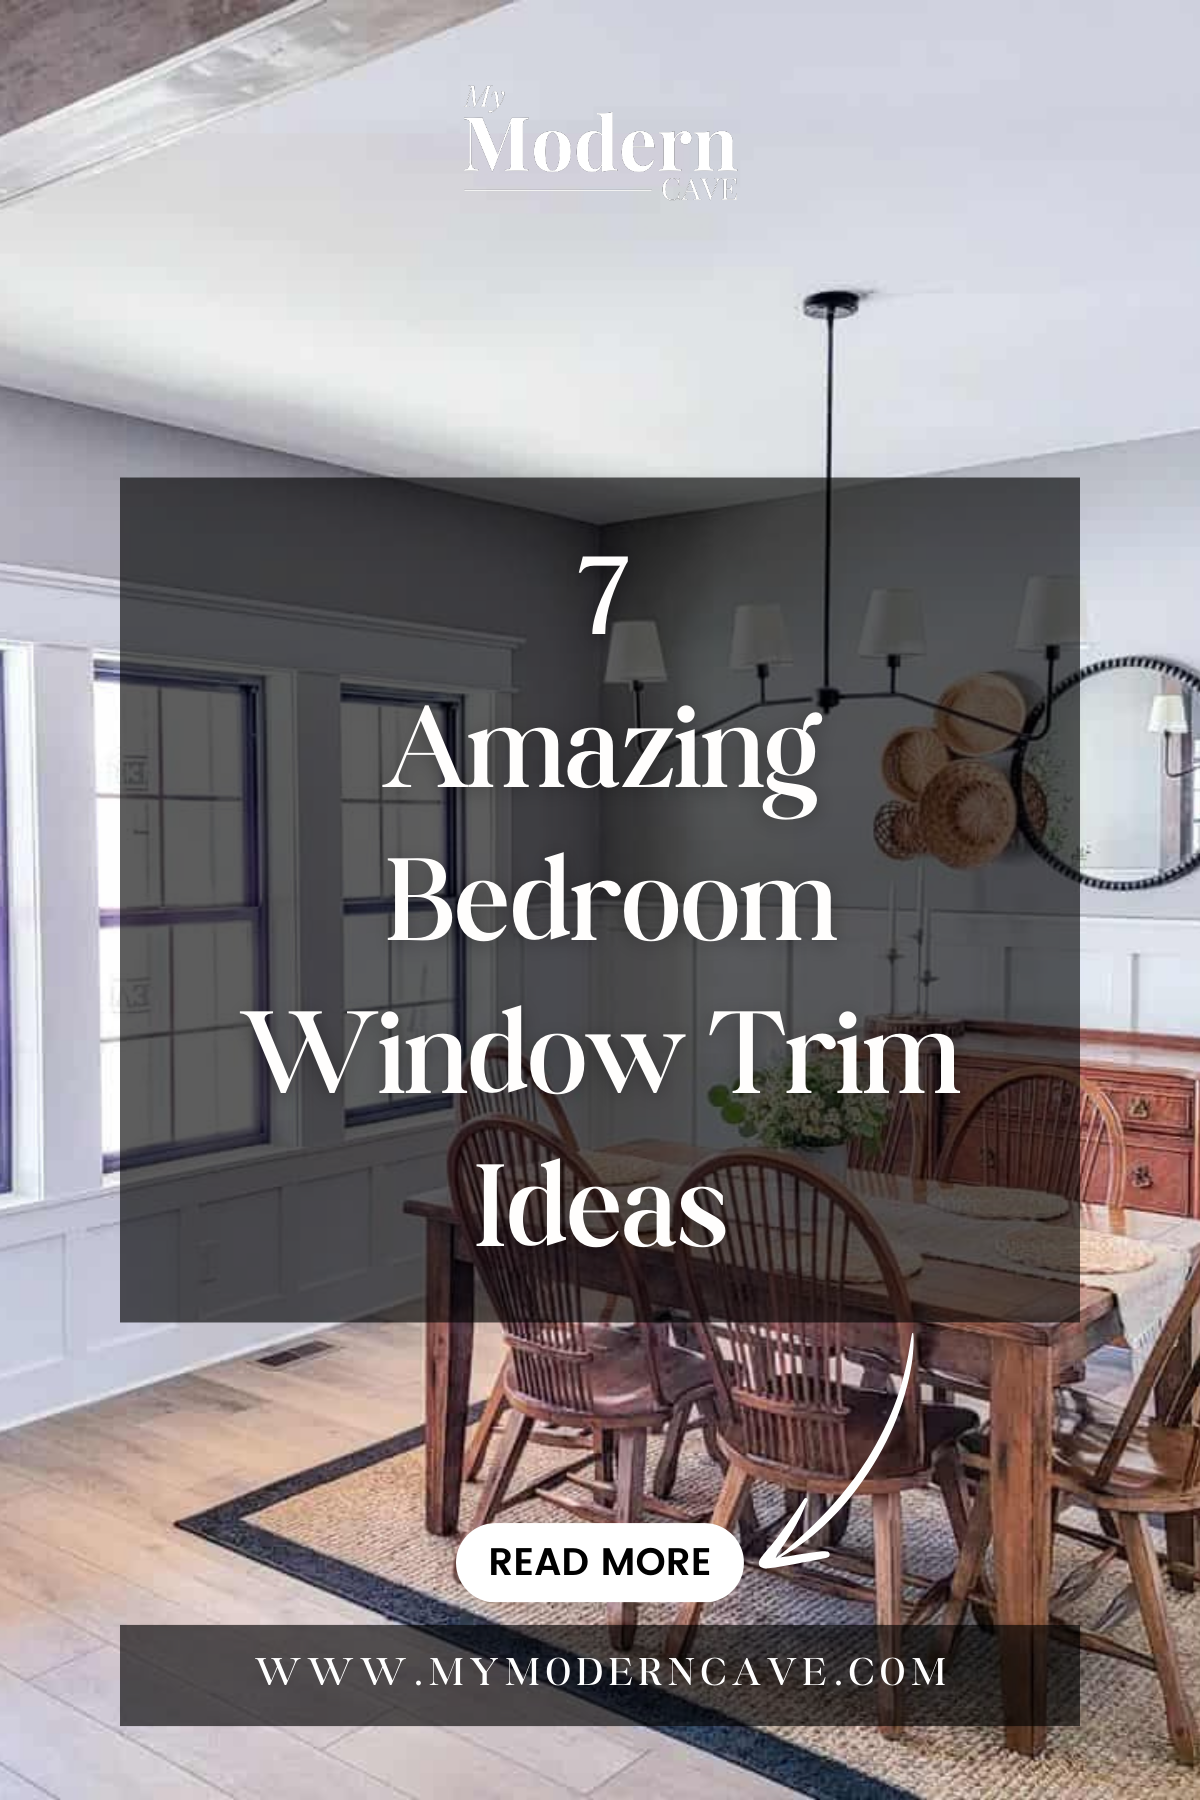 Bedroom Window Trim Ideas Infographic